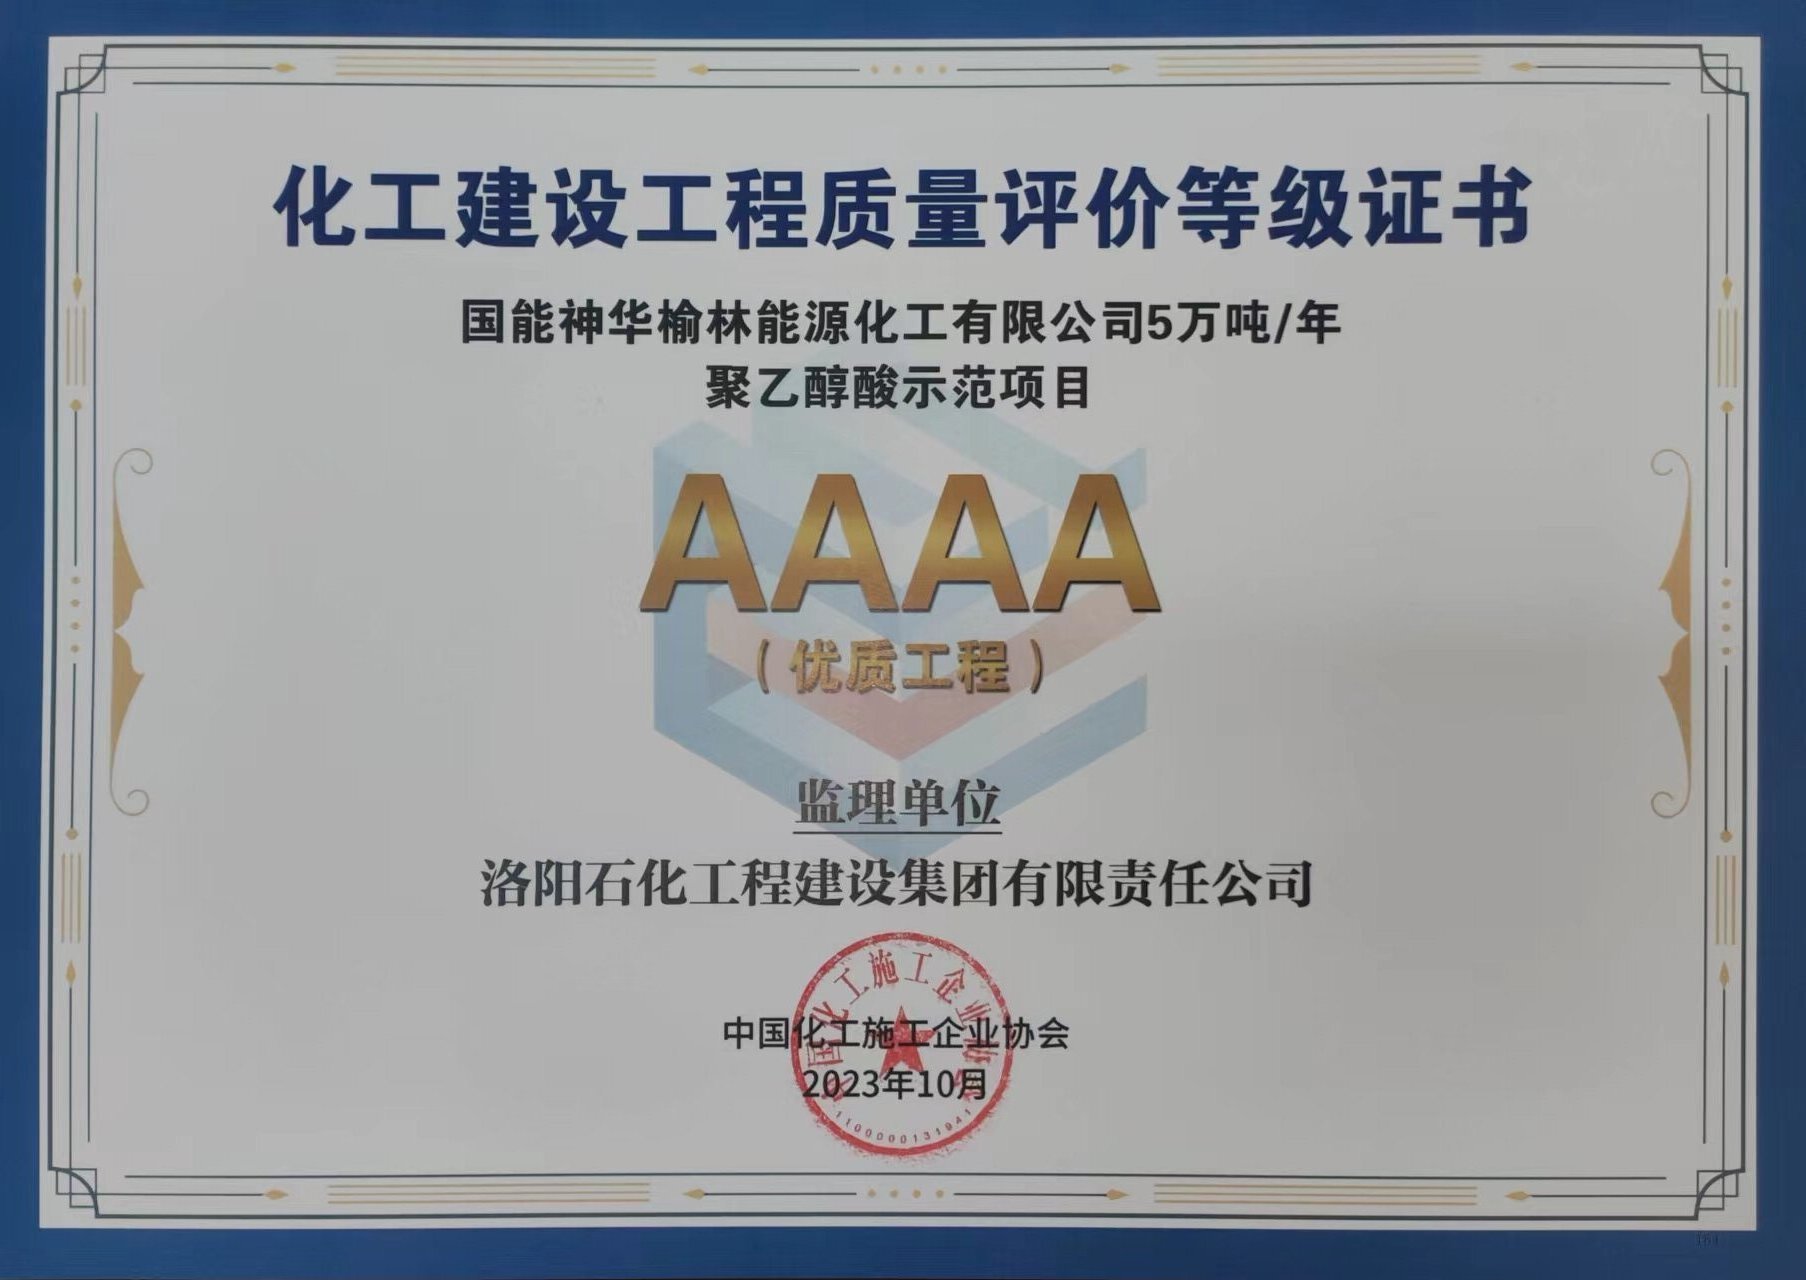 中国化工施工企业协会2023年度AAAA优质工程-国能神华榆林能源化工有限公司5万吨/年聚乙醇酸示范项目